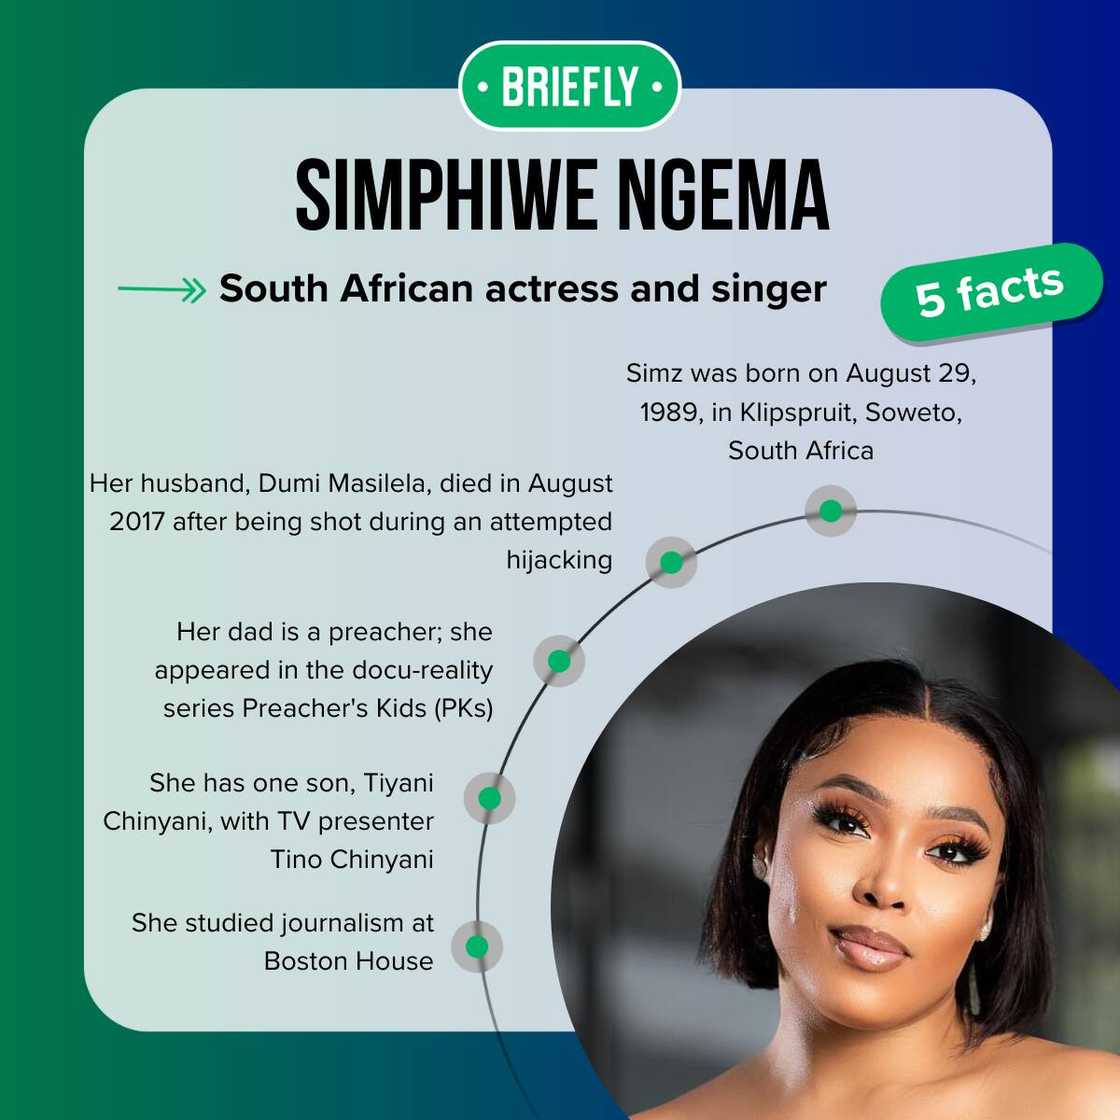 Simphiwe Ngema's facts